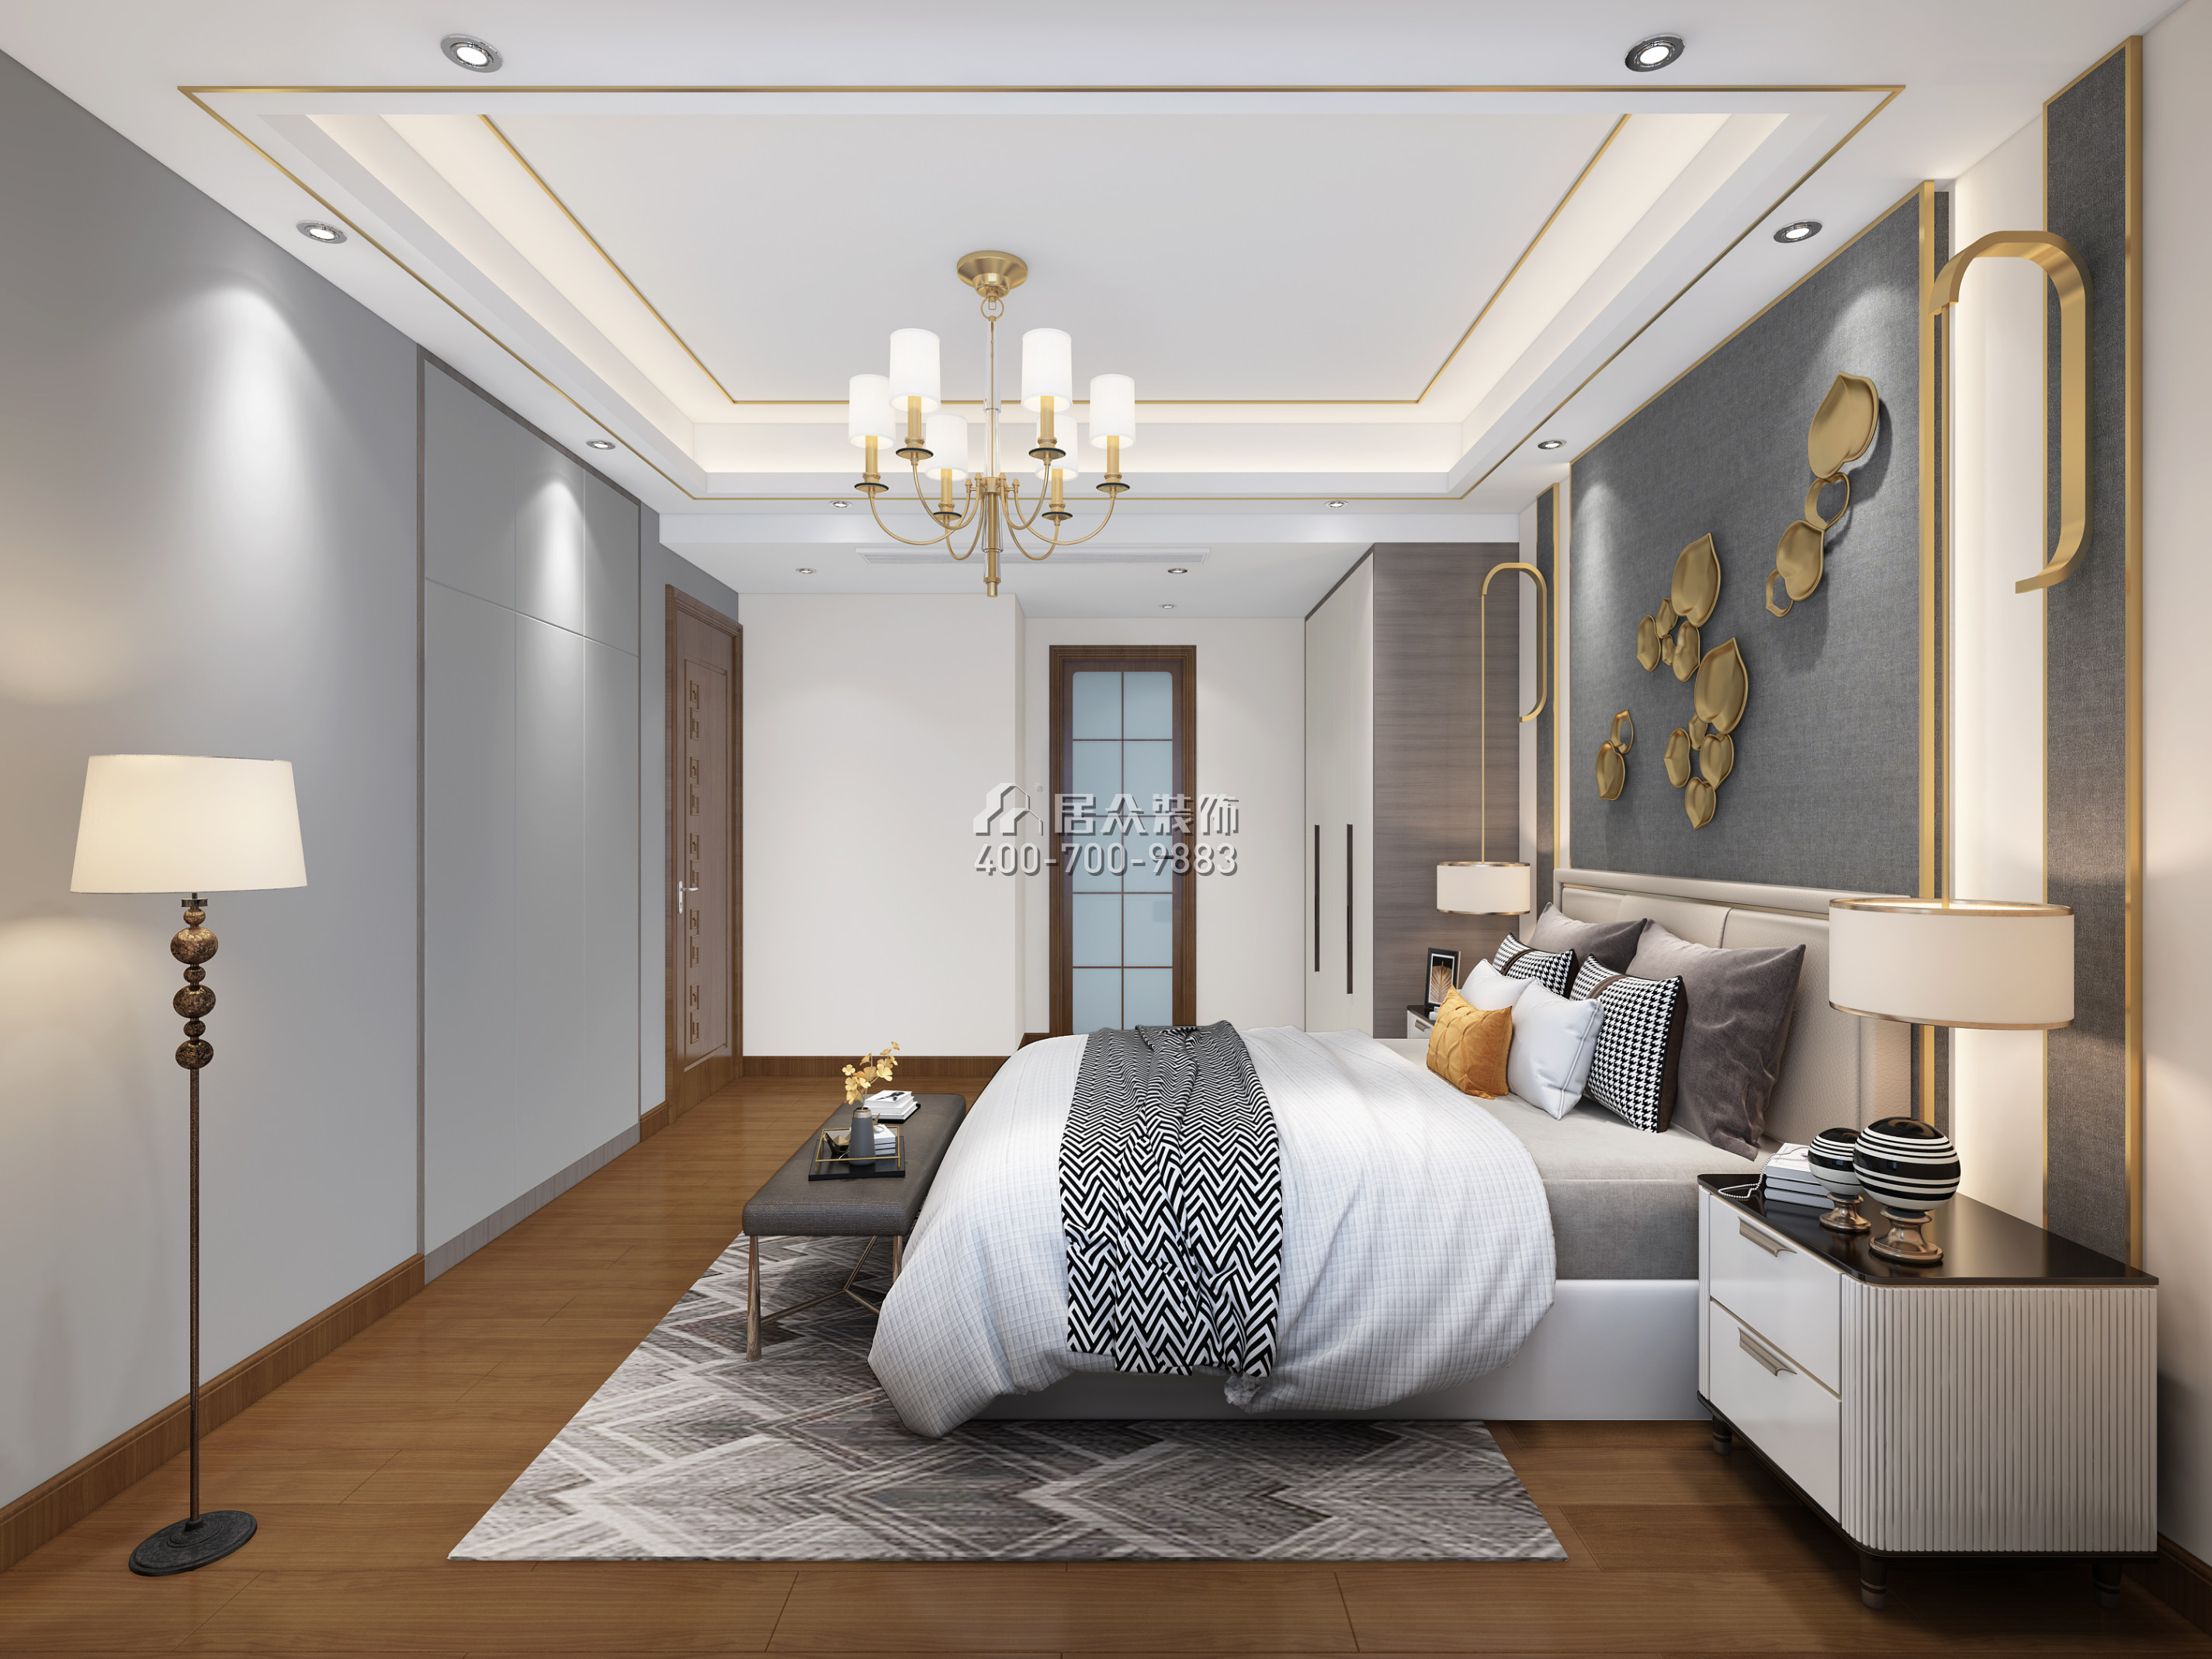 阳光天健城143平方米中式风格平层户型卧室装修效果图